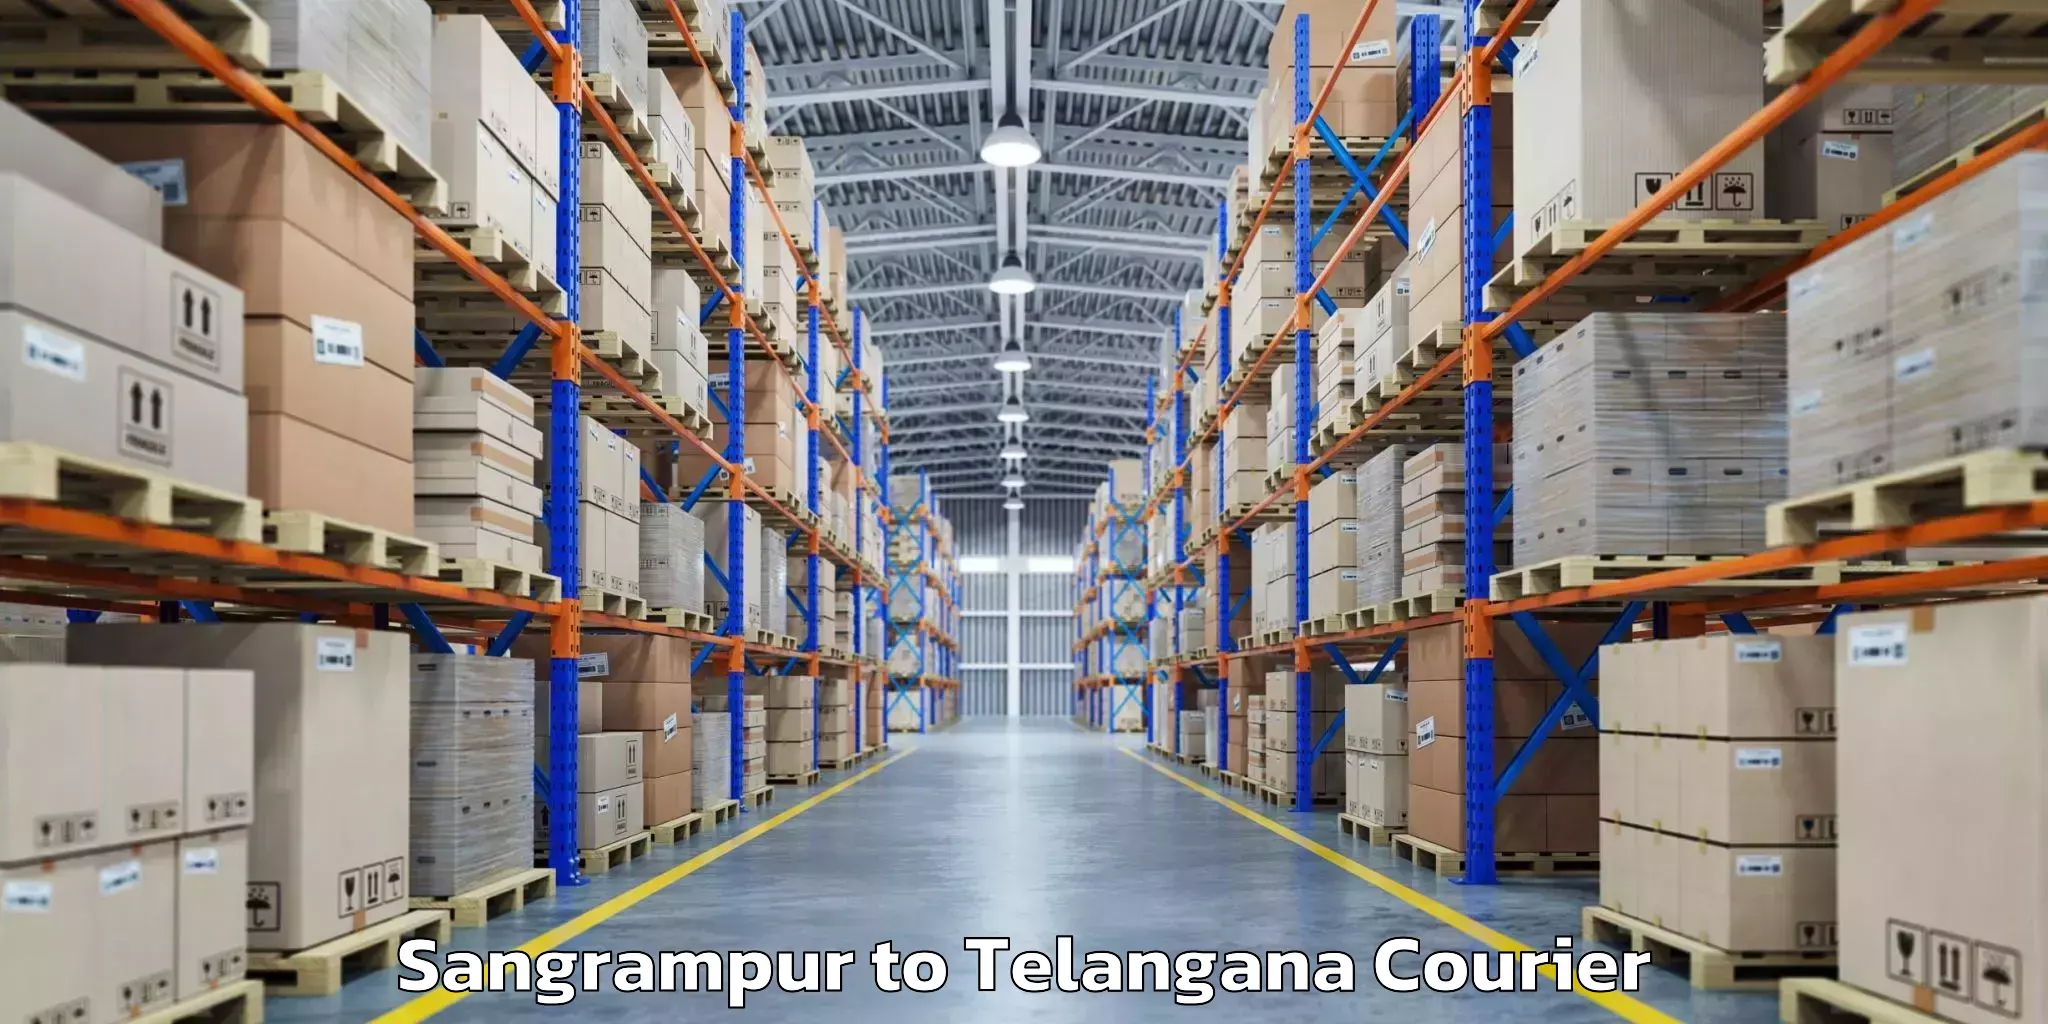 Baggage shipping schedule Sangrampur to Hayathnagar